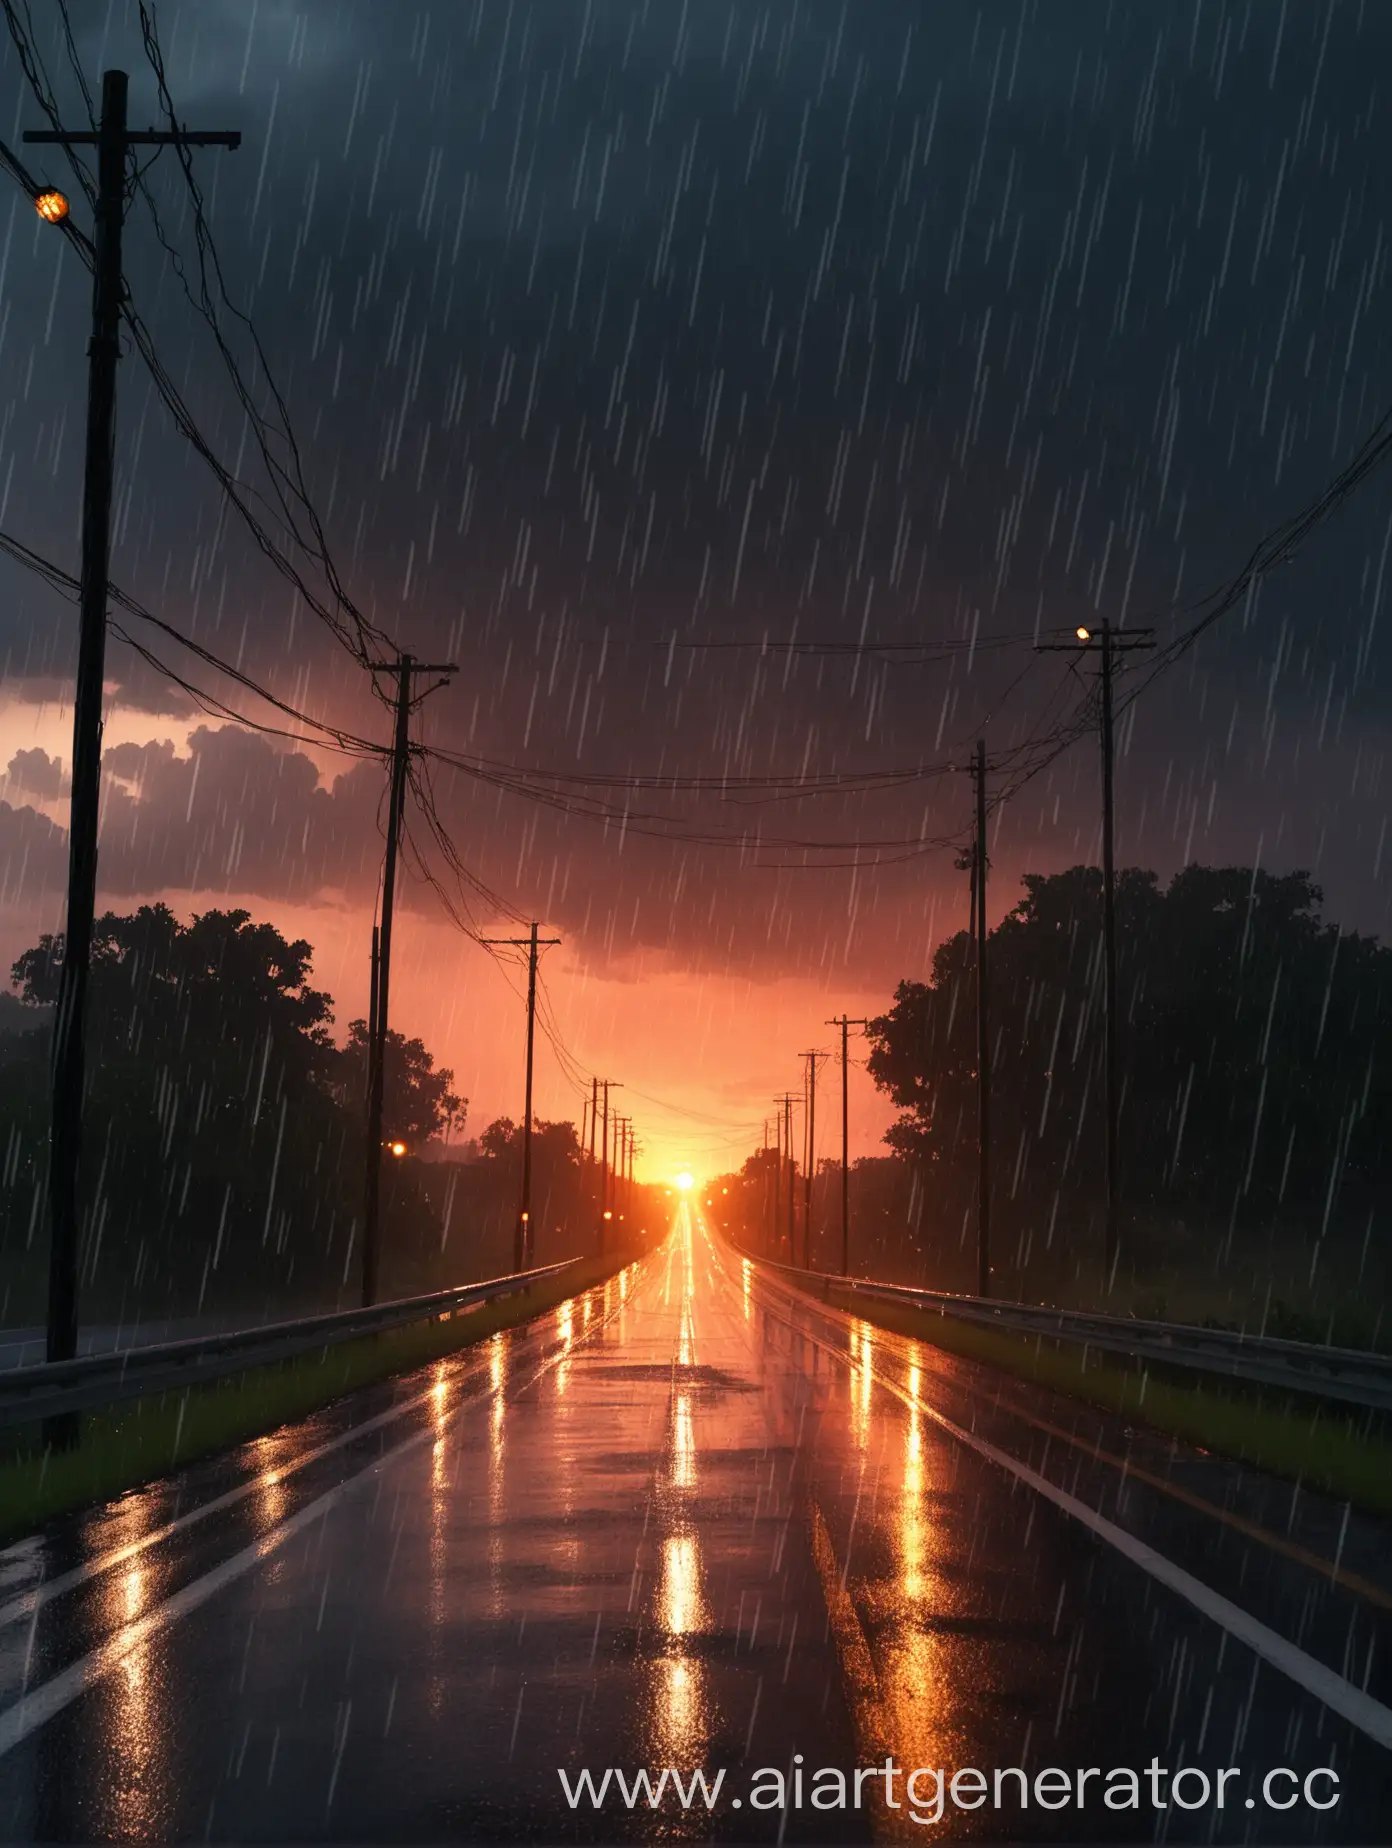 Vibrant-Sunset-Rain-on-Urban-Road-with-Illuminated-Lights